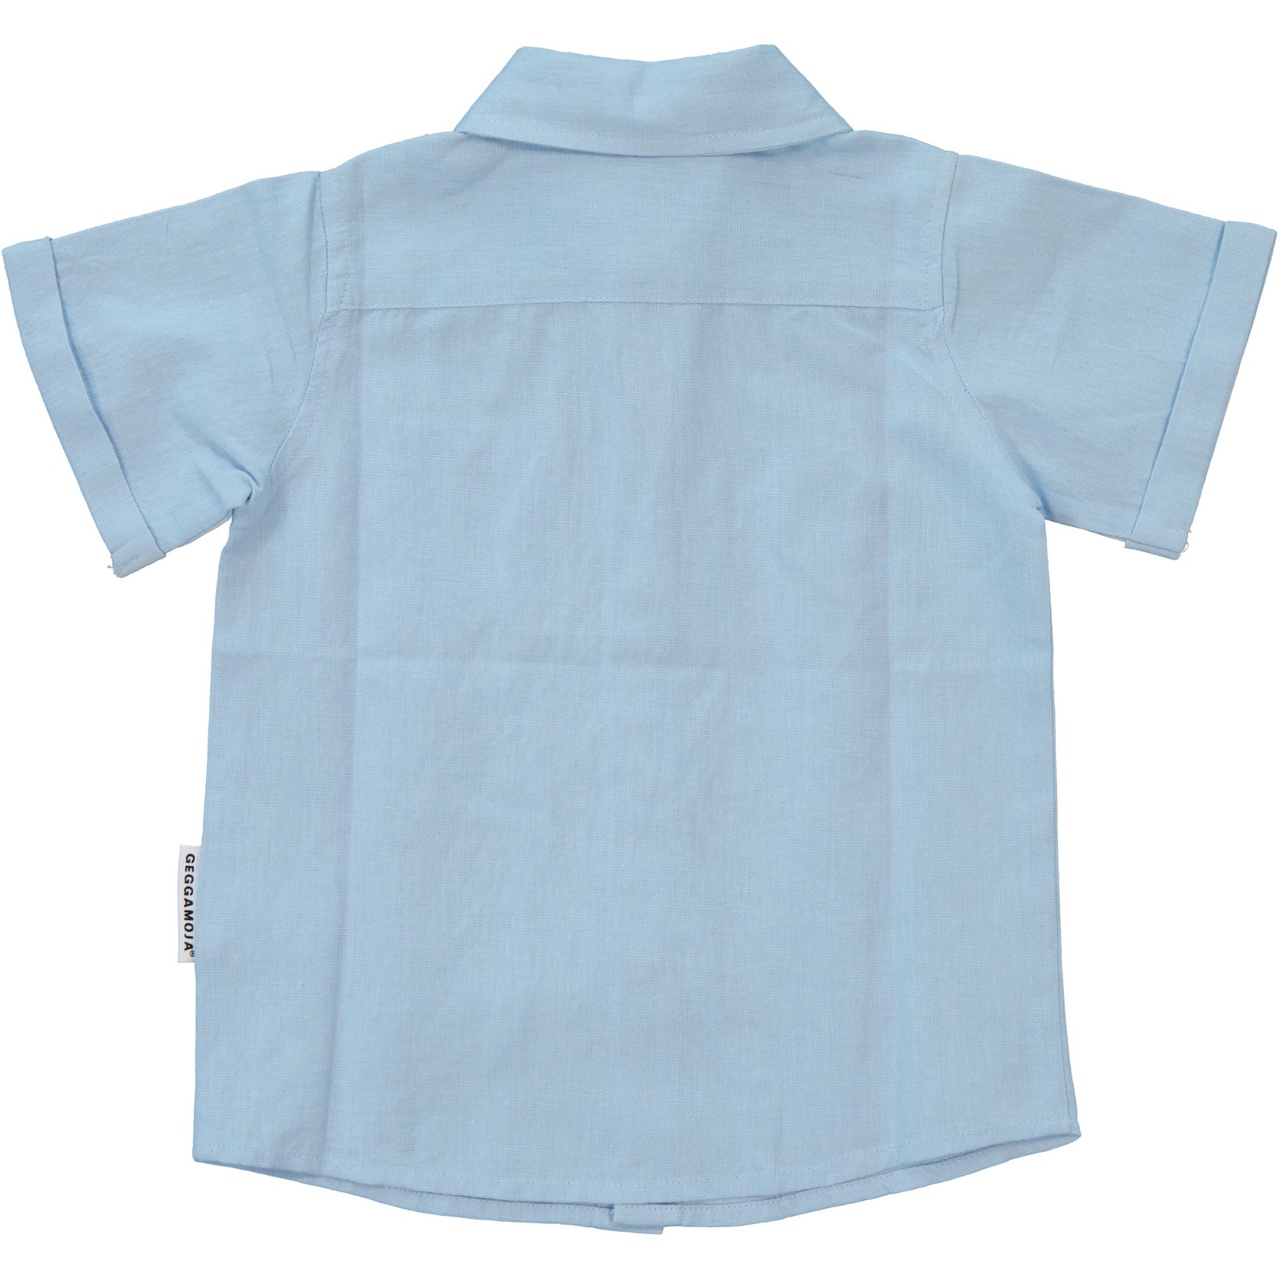 Linnen Shirt S.S Light blue 134/140